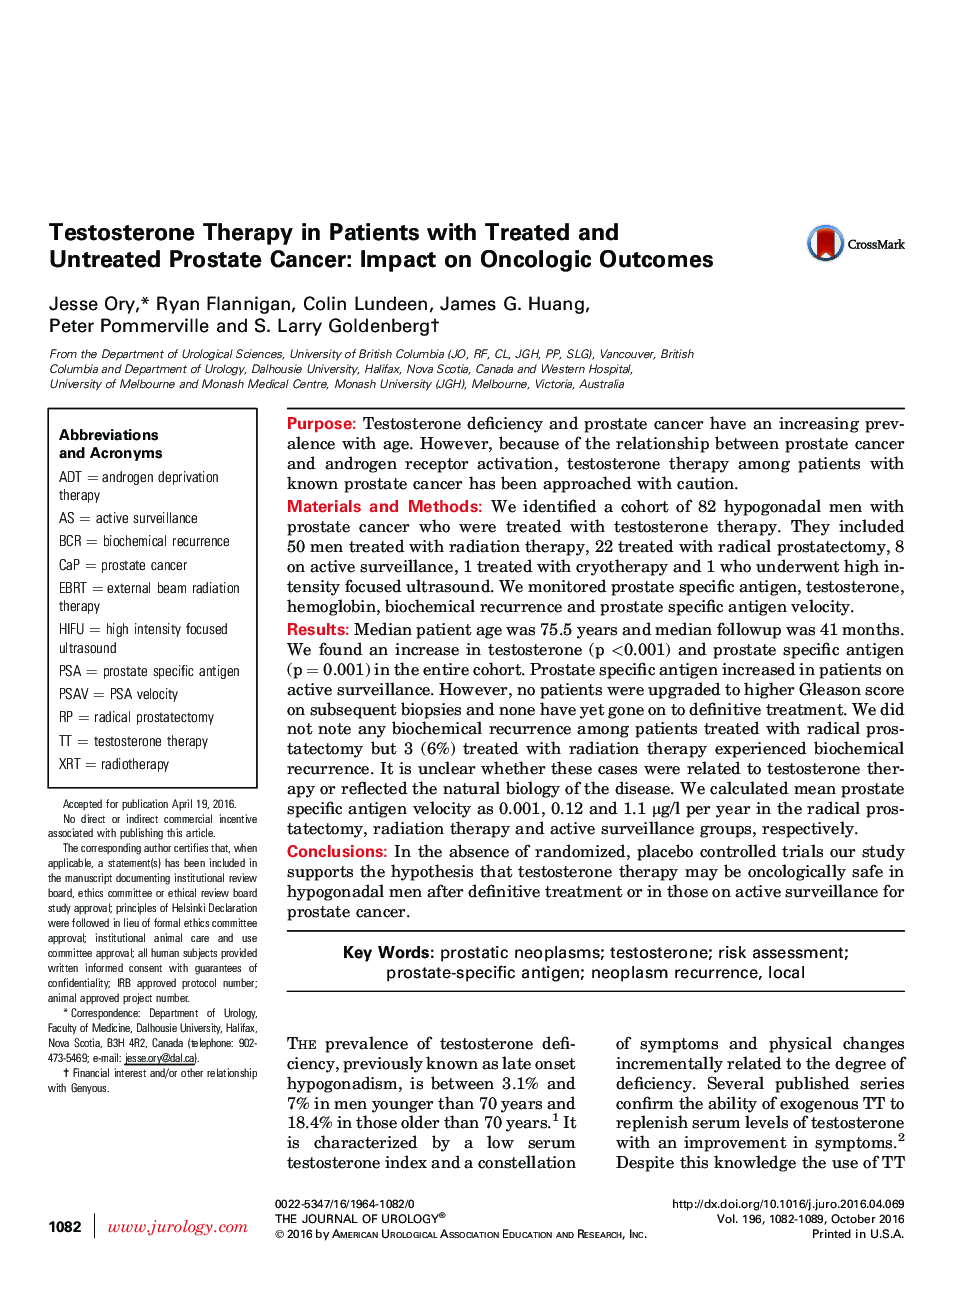 درمان با تستوسترون در افراد مبتلا به سرطان پروستات درمان و عدم درمان: تاثیر بر نتایج انکولوژیک 